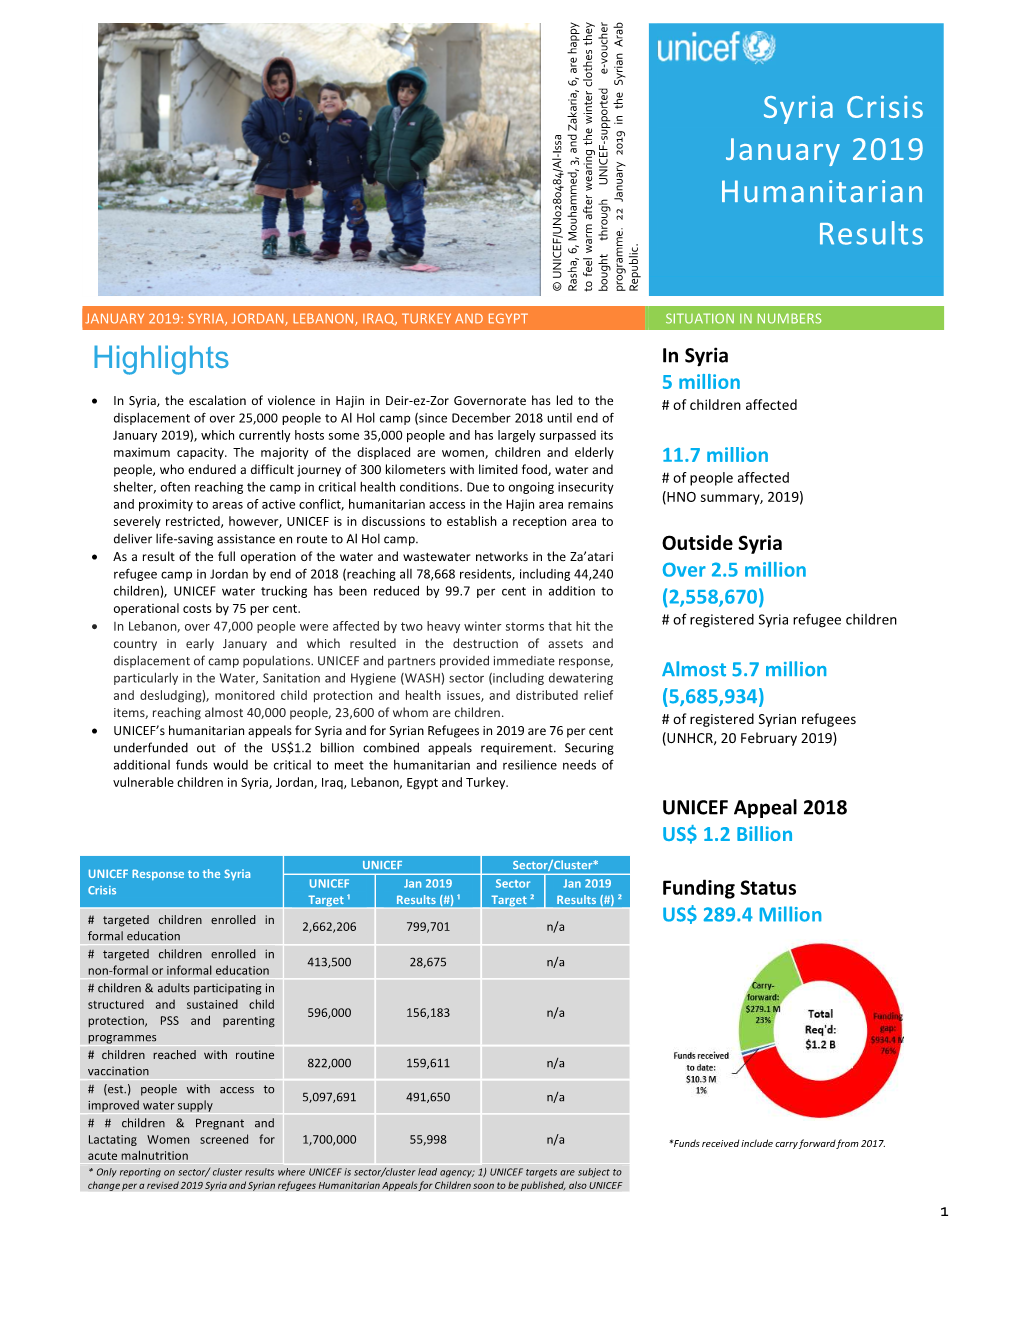 Syria Crisis January 2019 Humanitarian Results